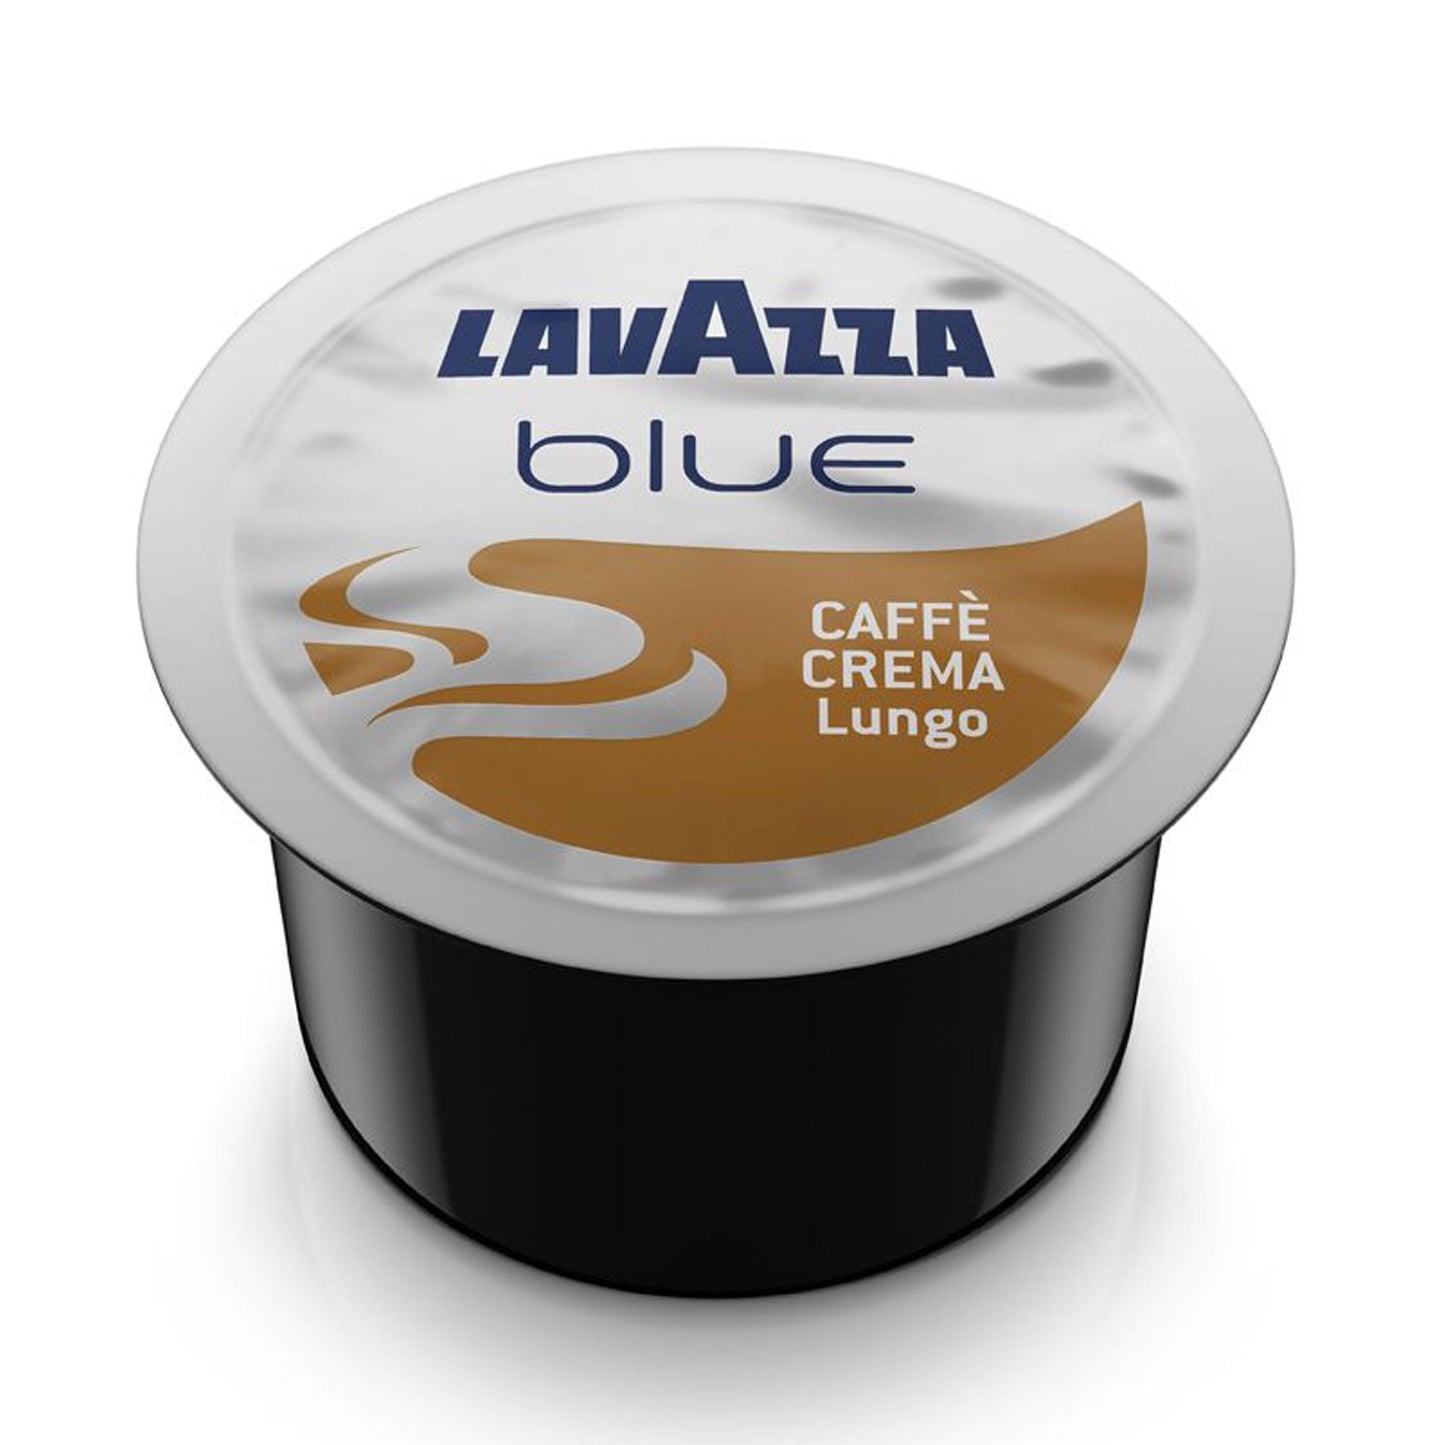 CAFFÈ Crema Lungo 100% Arabica LAVAZZA BLUE (Kapseln)